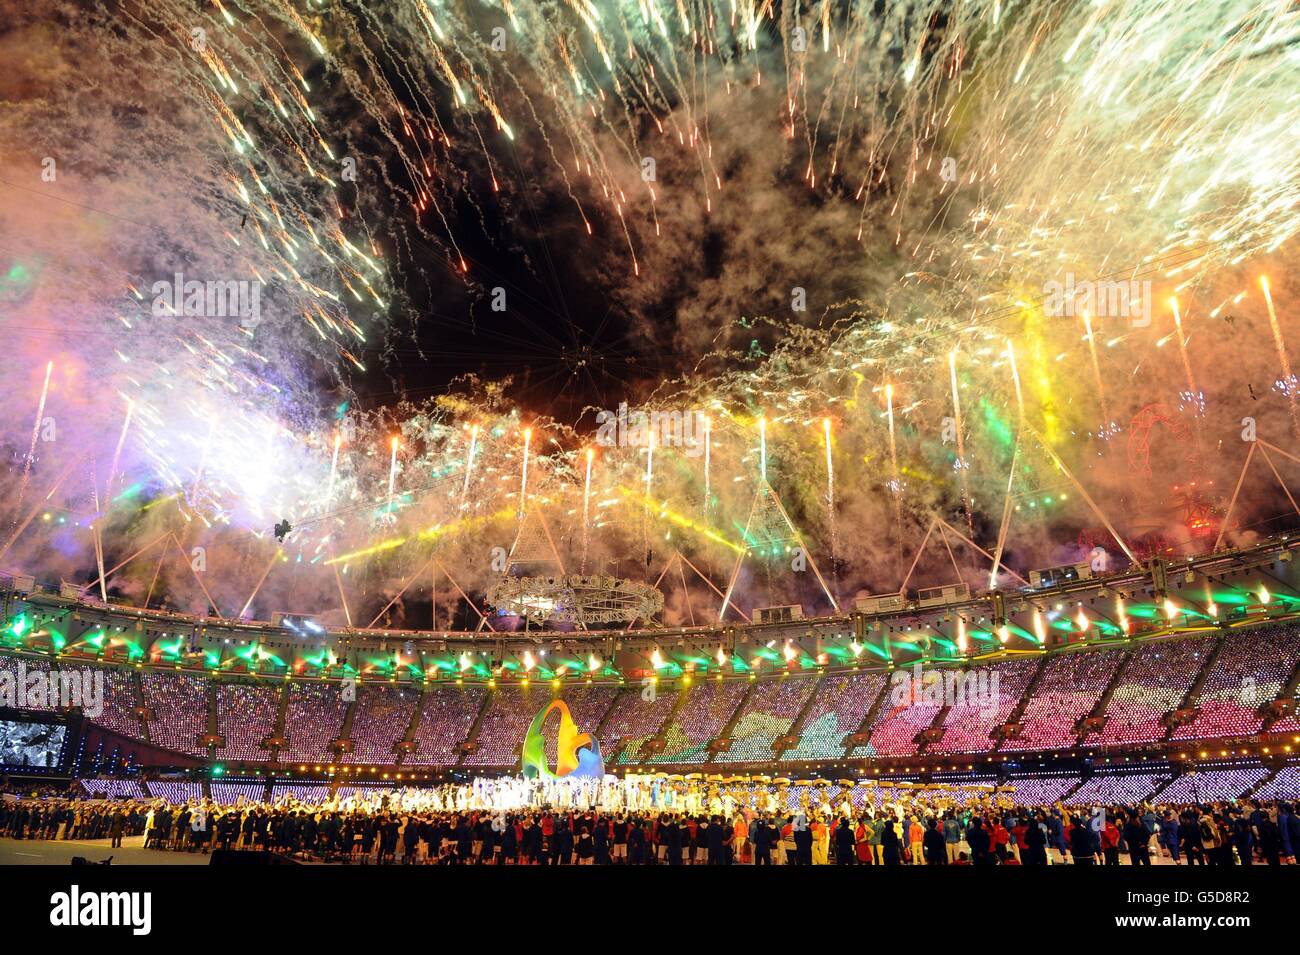 Jeux Olympiques de Londres - jour 16.Feux d'artifice lors de la cérémonie de clôture des Jeux Olympiques de Londres 2012, Londres Banque D'Images